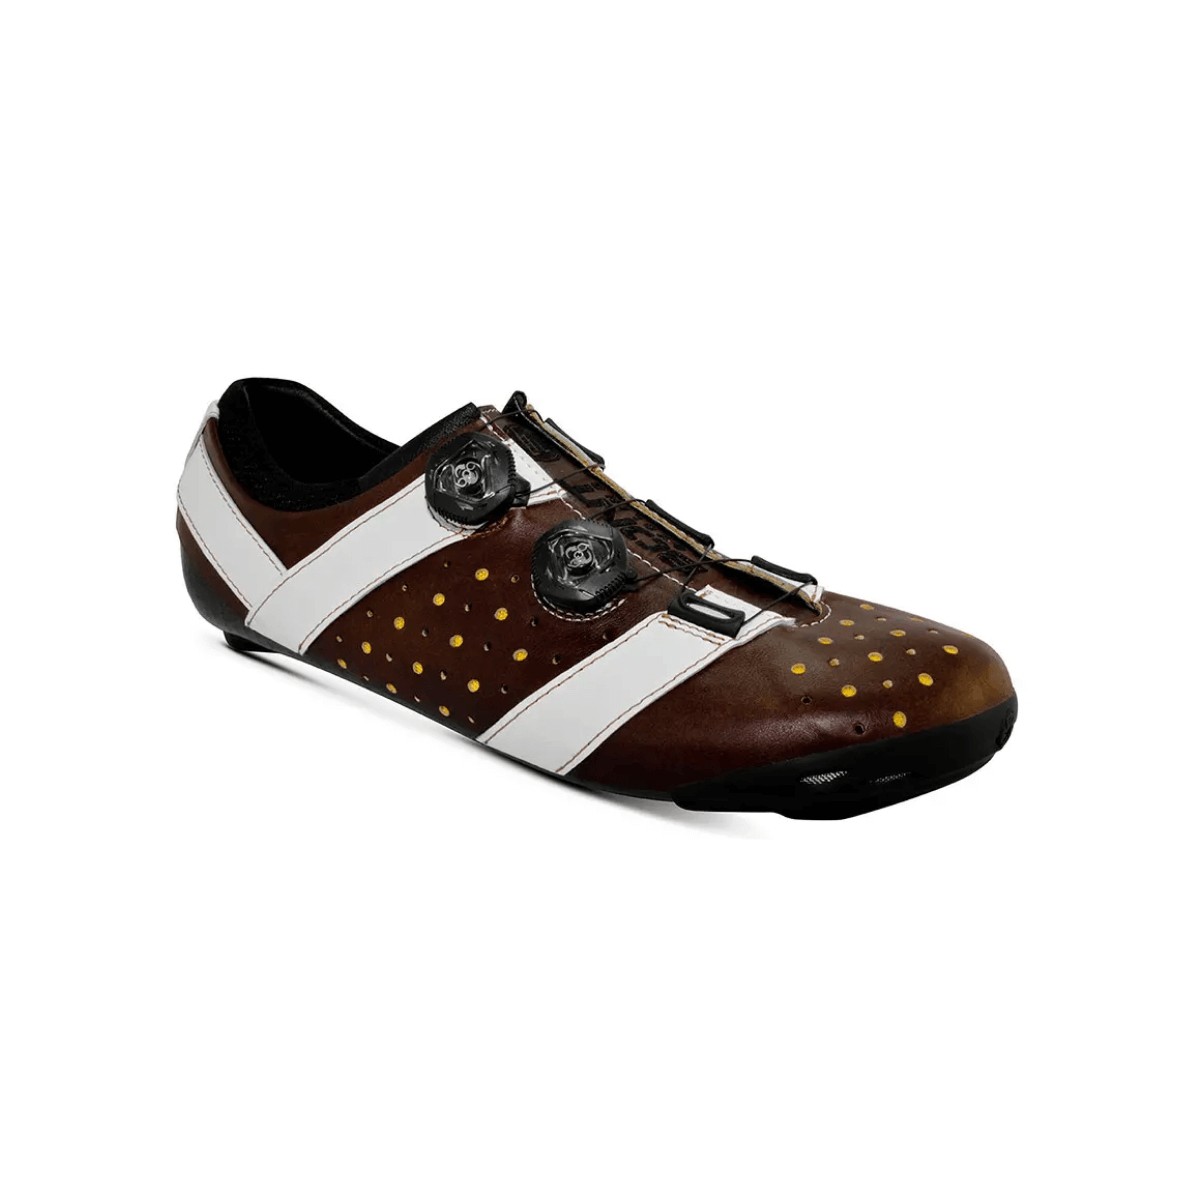 Bont Vaypor + Kangaroo Leather Shoes Brown White, Size 44 - EUR